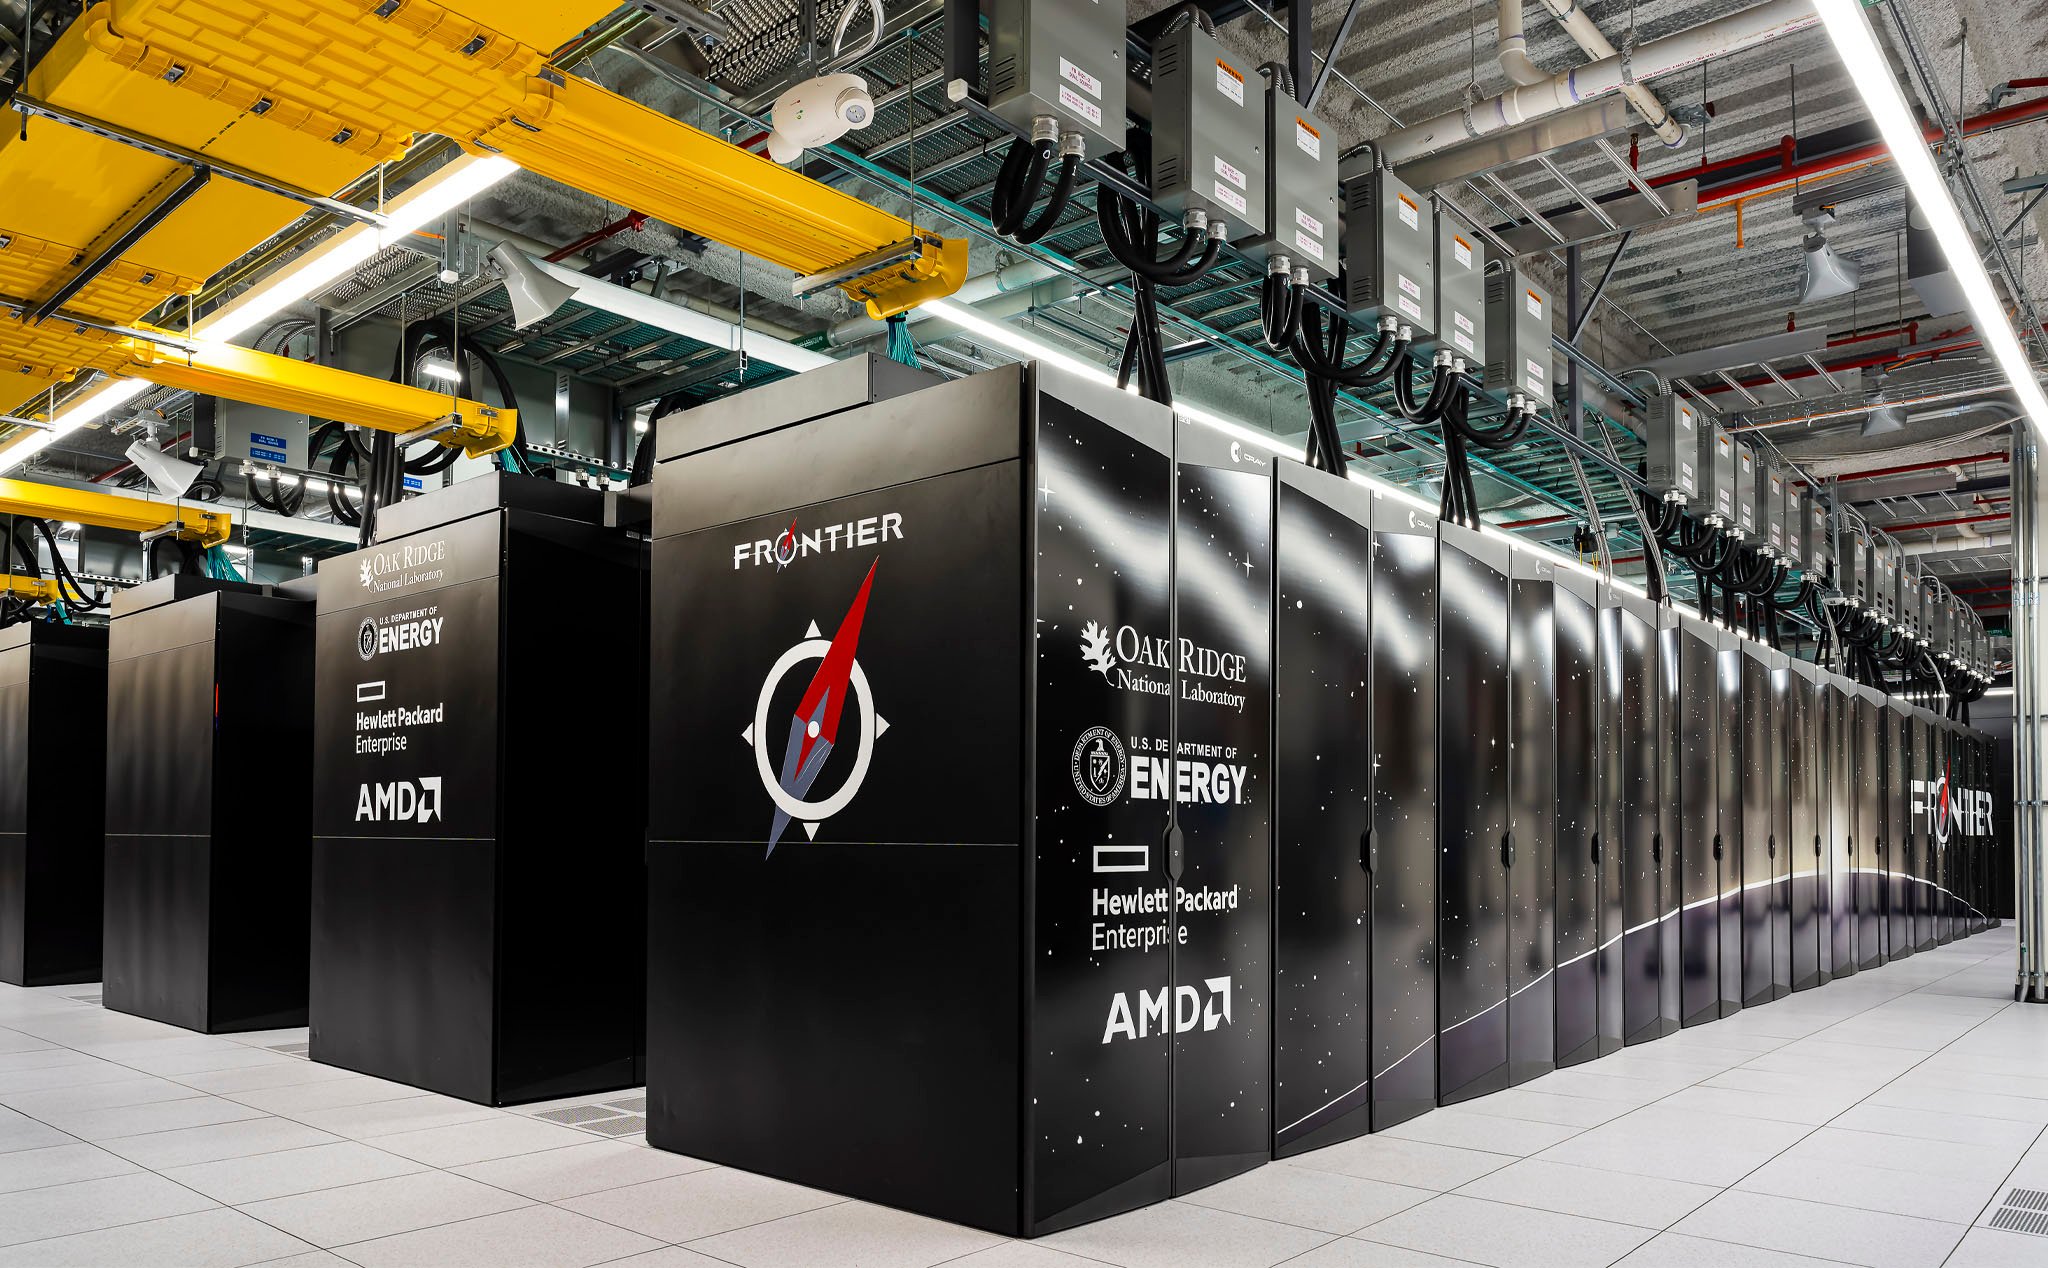 Xếp hạng siêu máy tính Top500: Frontier chip AMD EPYC mạnh nhất, Aurora chip Intel Xeon thứ nhì